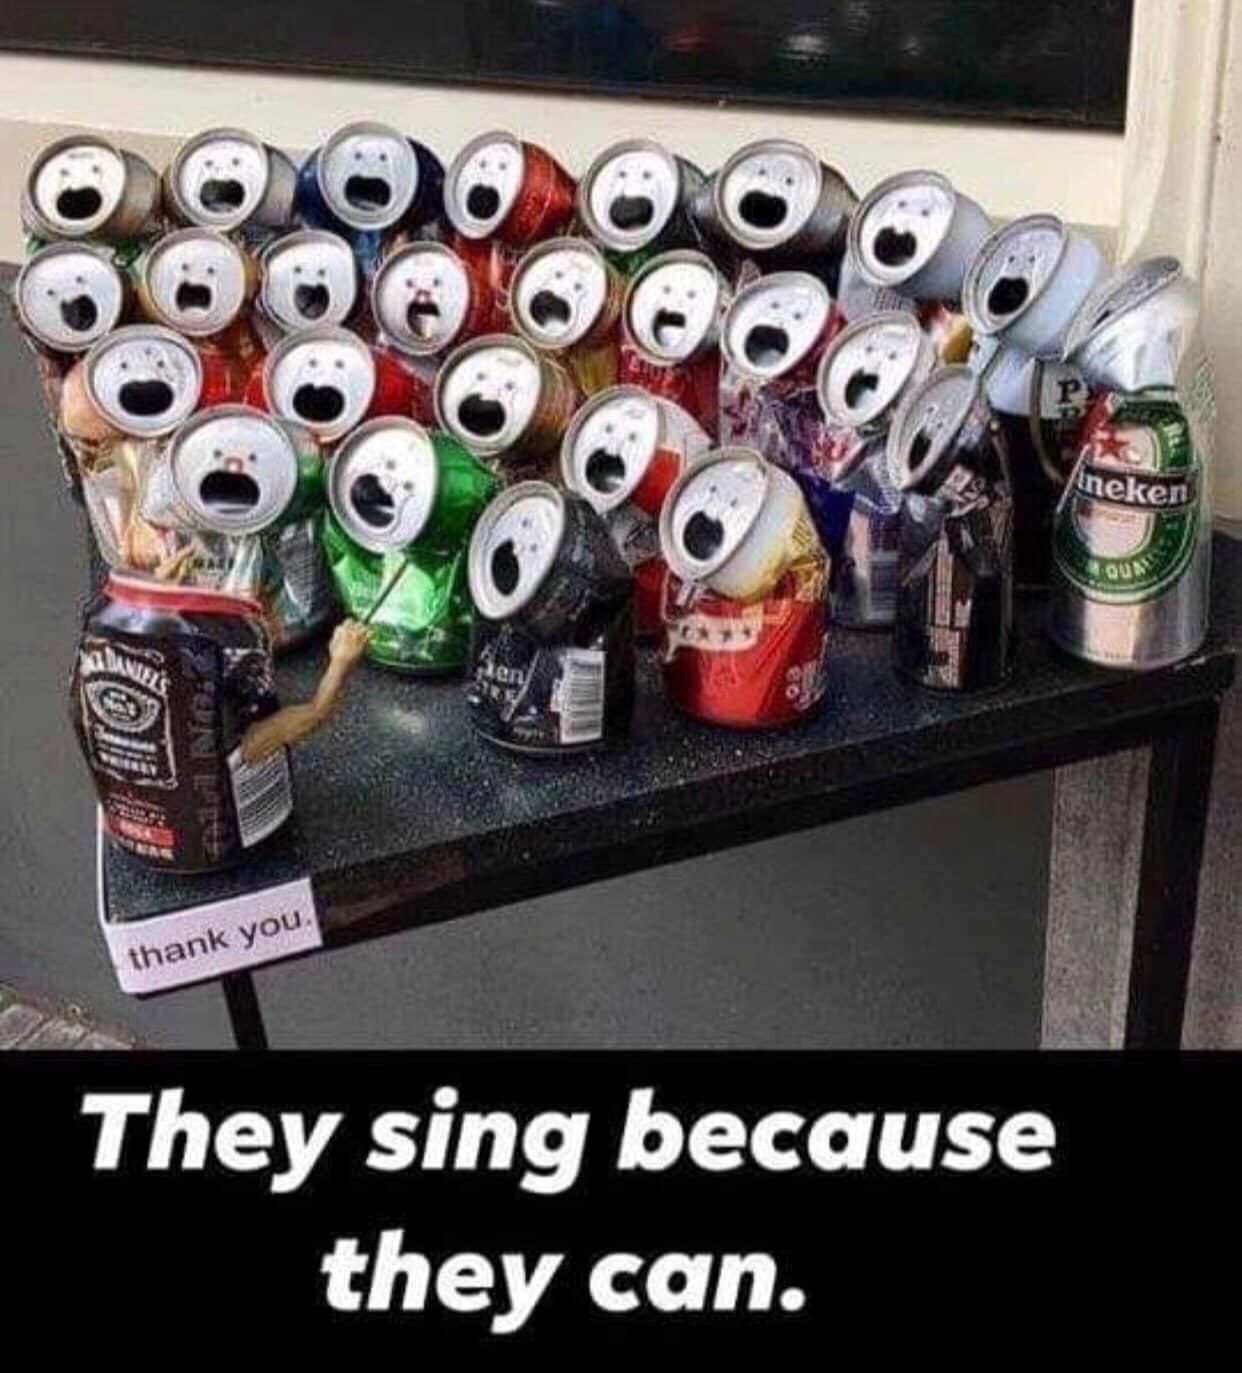 As the choir sings...